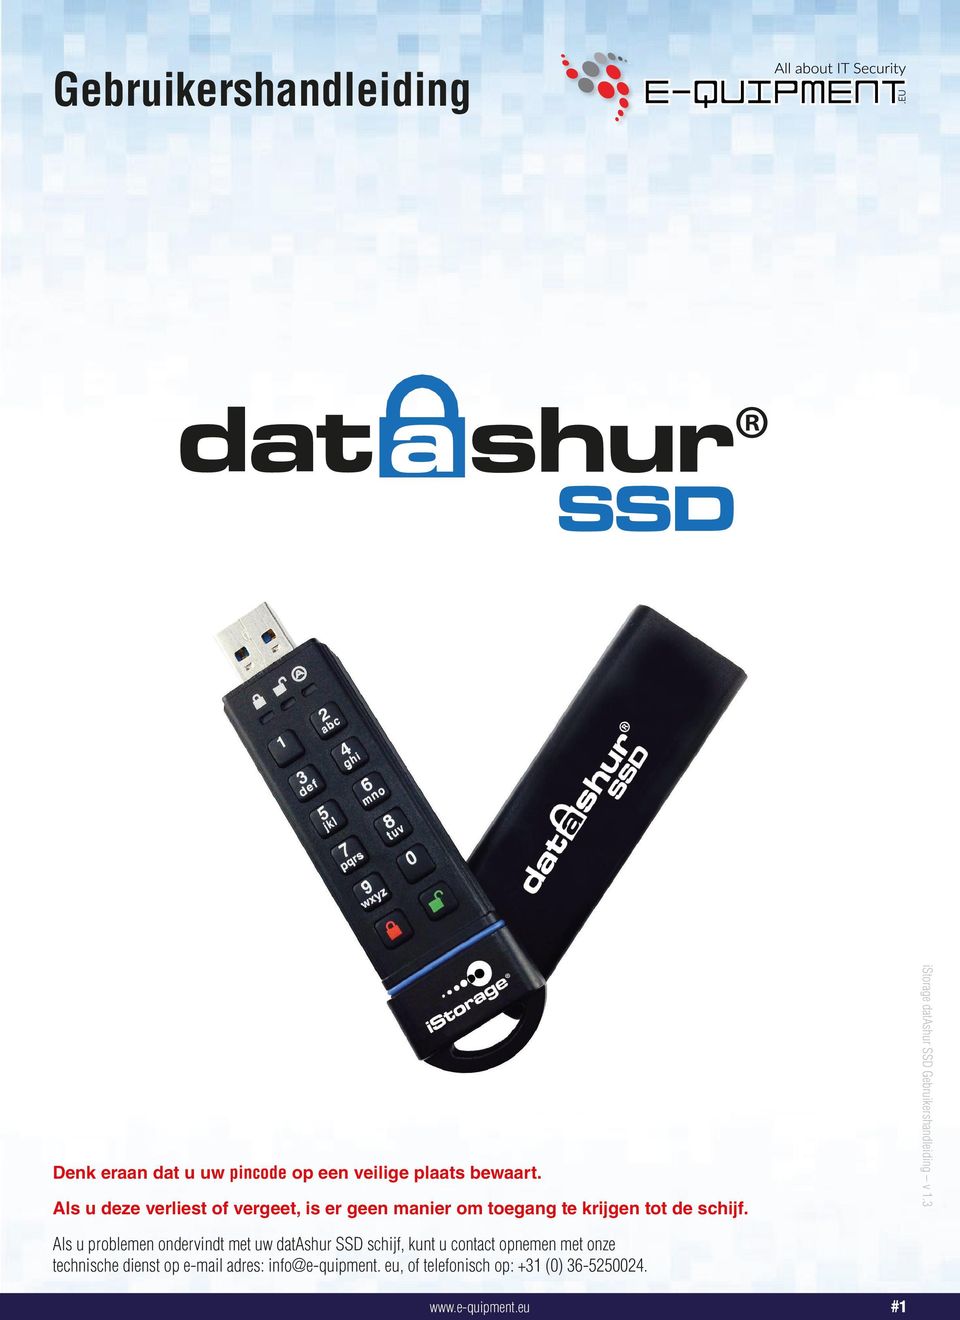 Als u problemen ondervindt met uw datashur SSD schijf, kunt u contact opnemen met onze